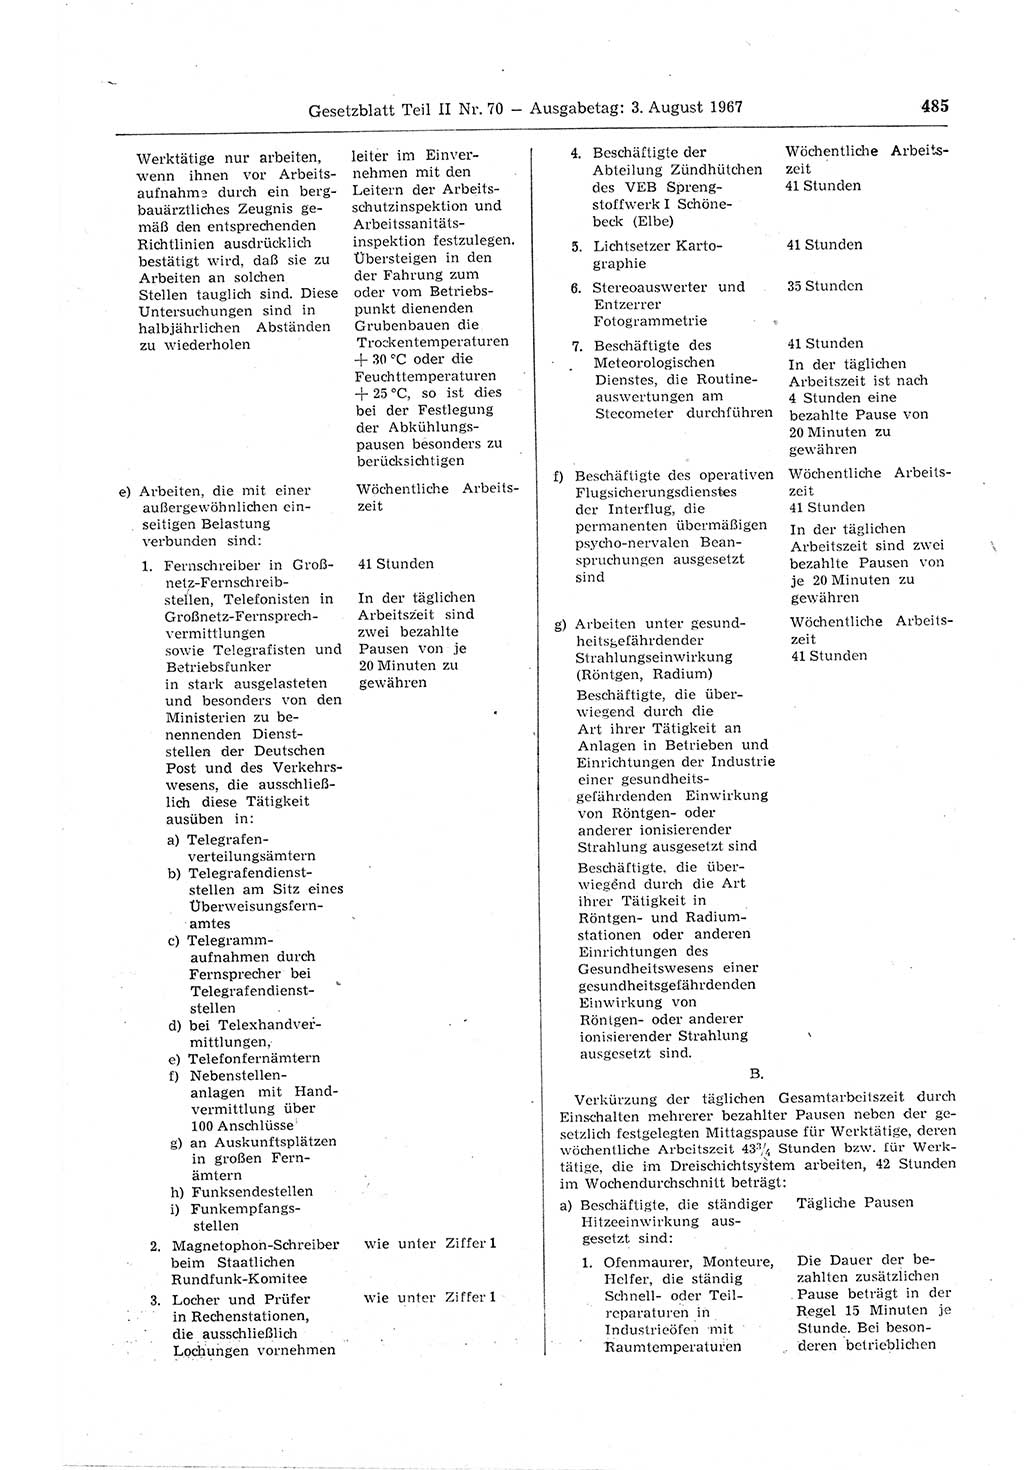 Gesetzblatt (GBl.) der Deutschen Demokratischen Republik (DDR) Teil ⅠⅠ 1967, Seite 485 (GBl. DDR ⅠⅠ 1967, S. 485)